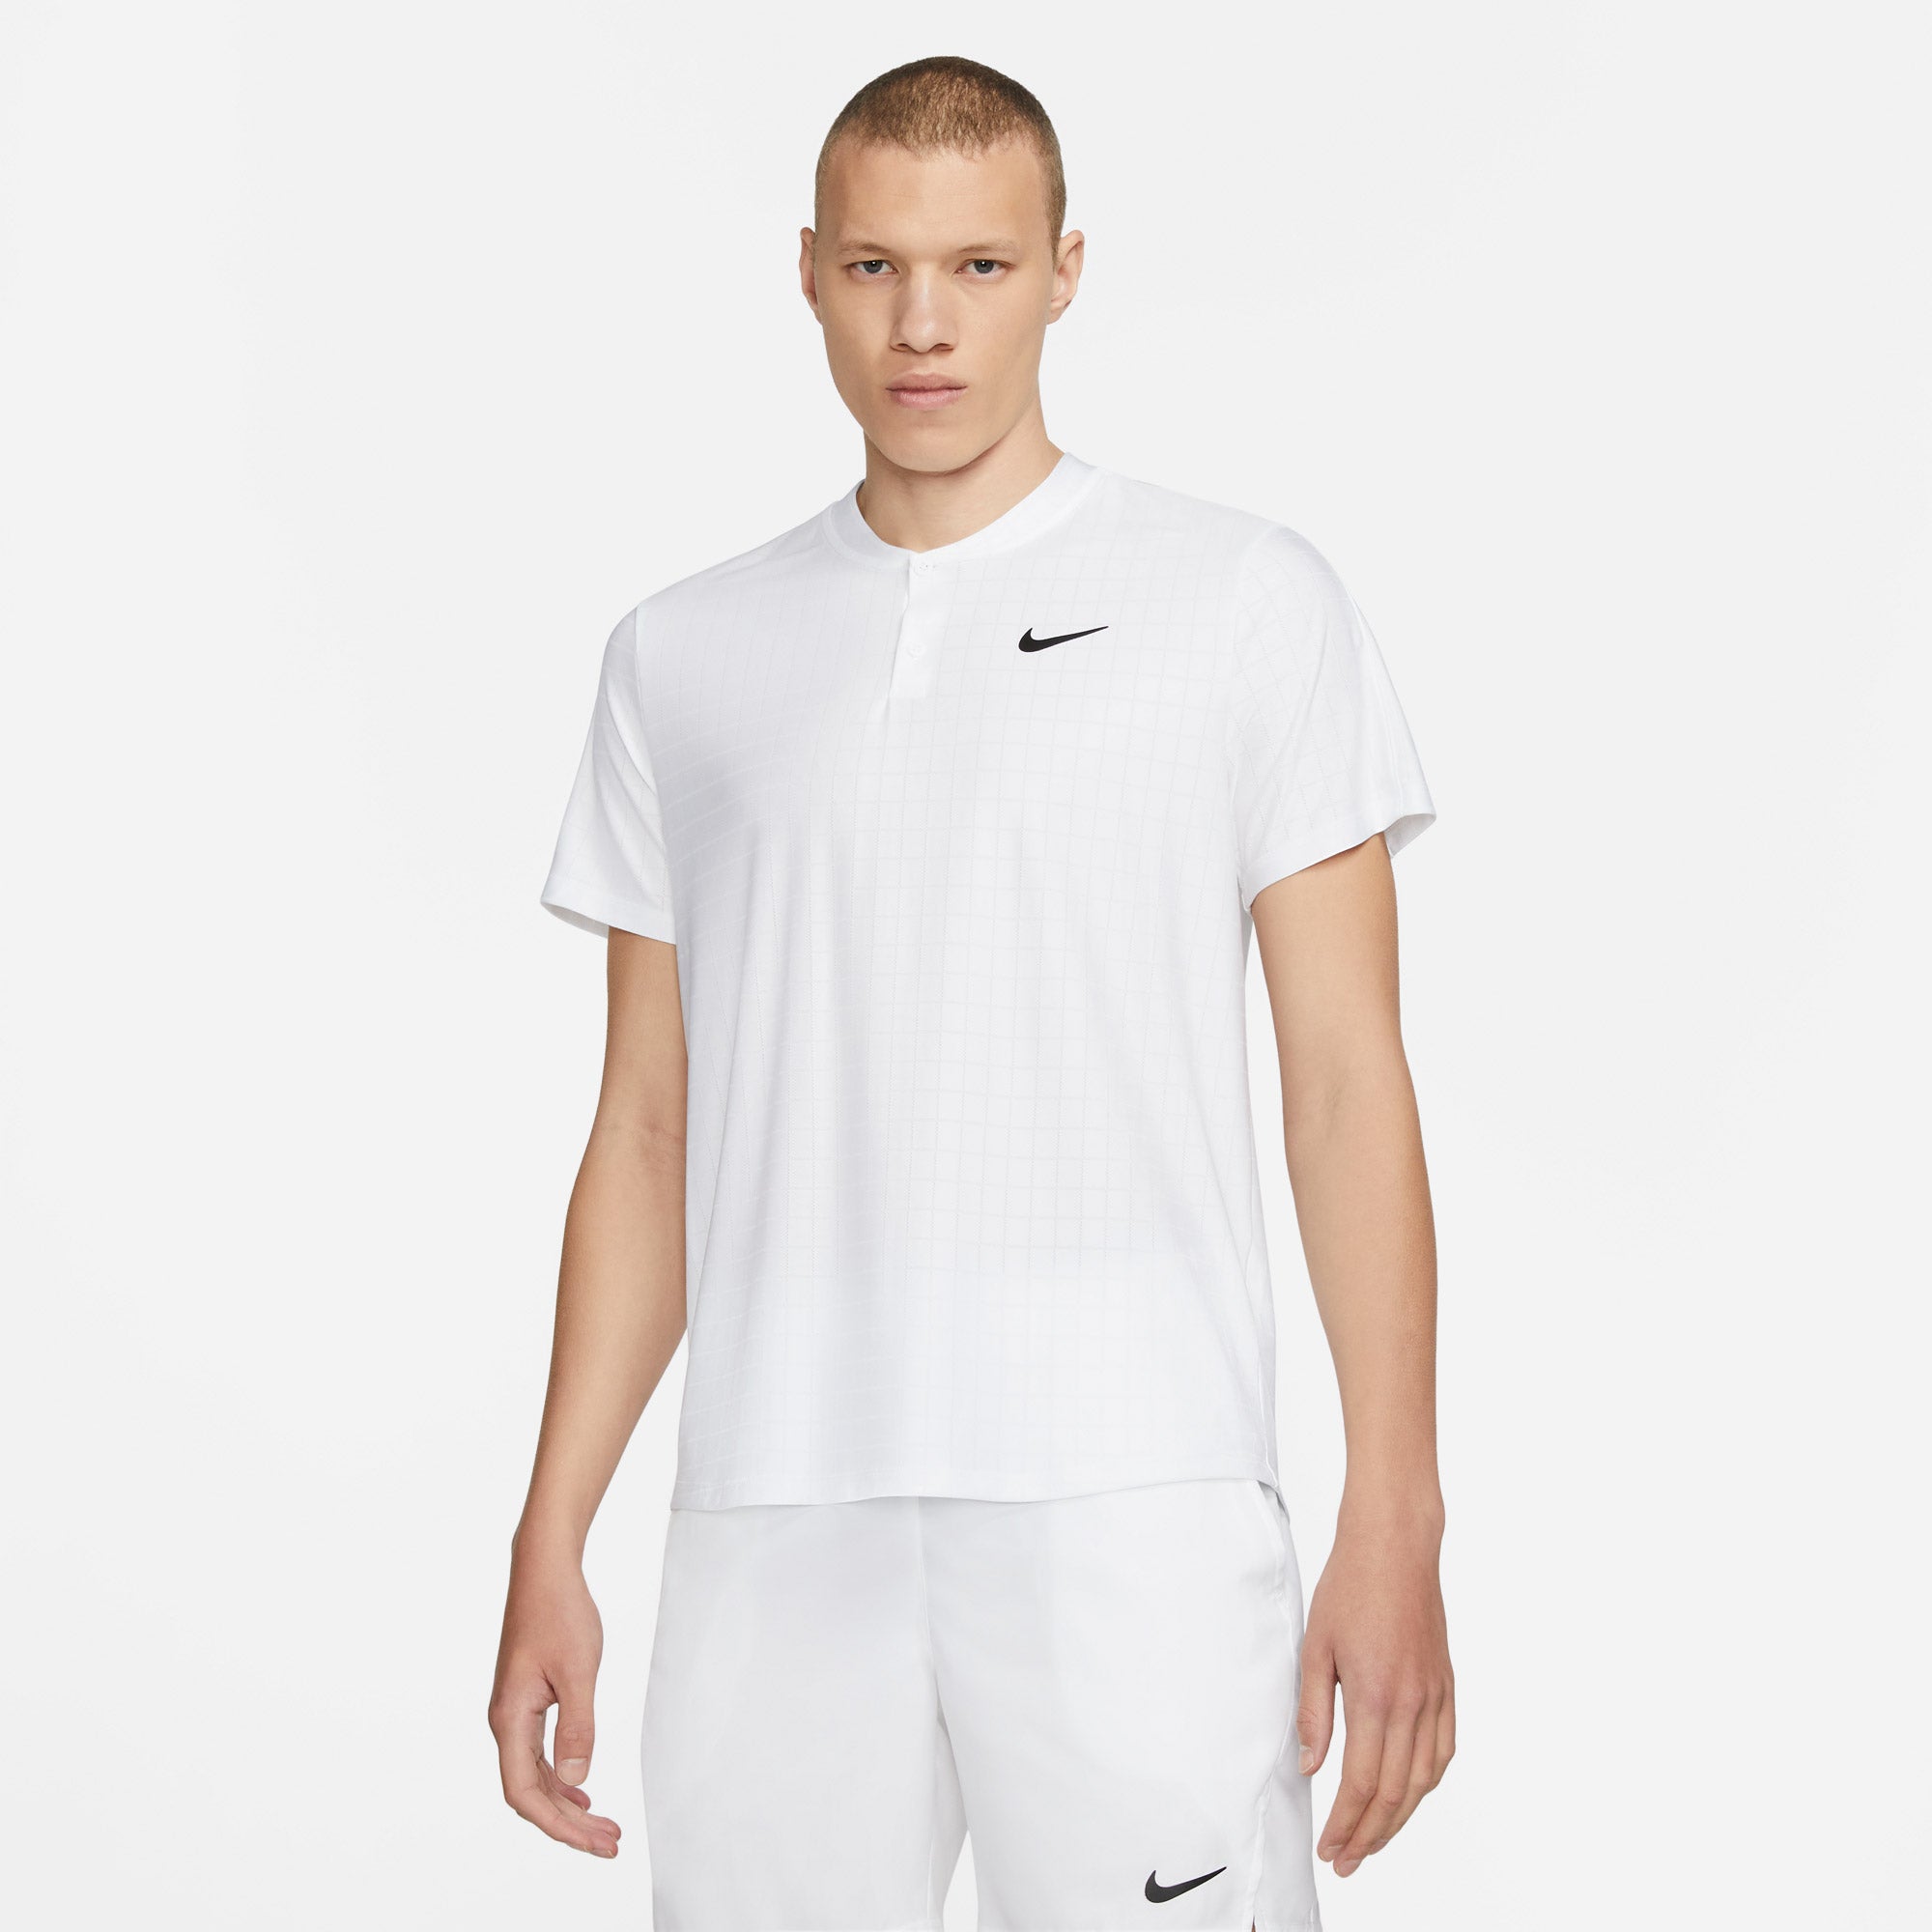 Nike Breathe Advantage Men's Tennis Polo White (1)